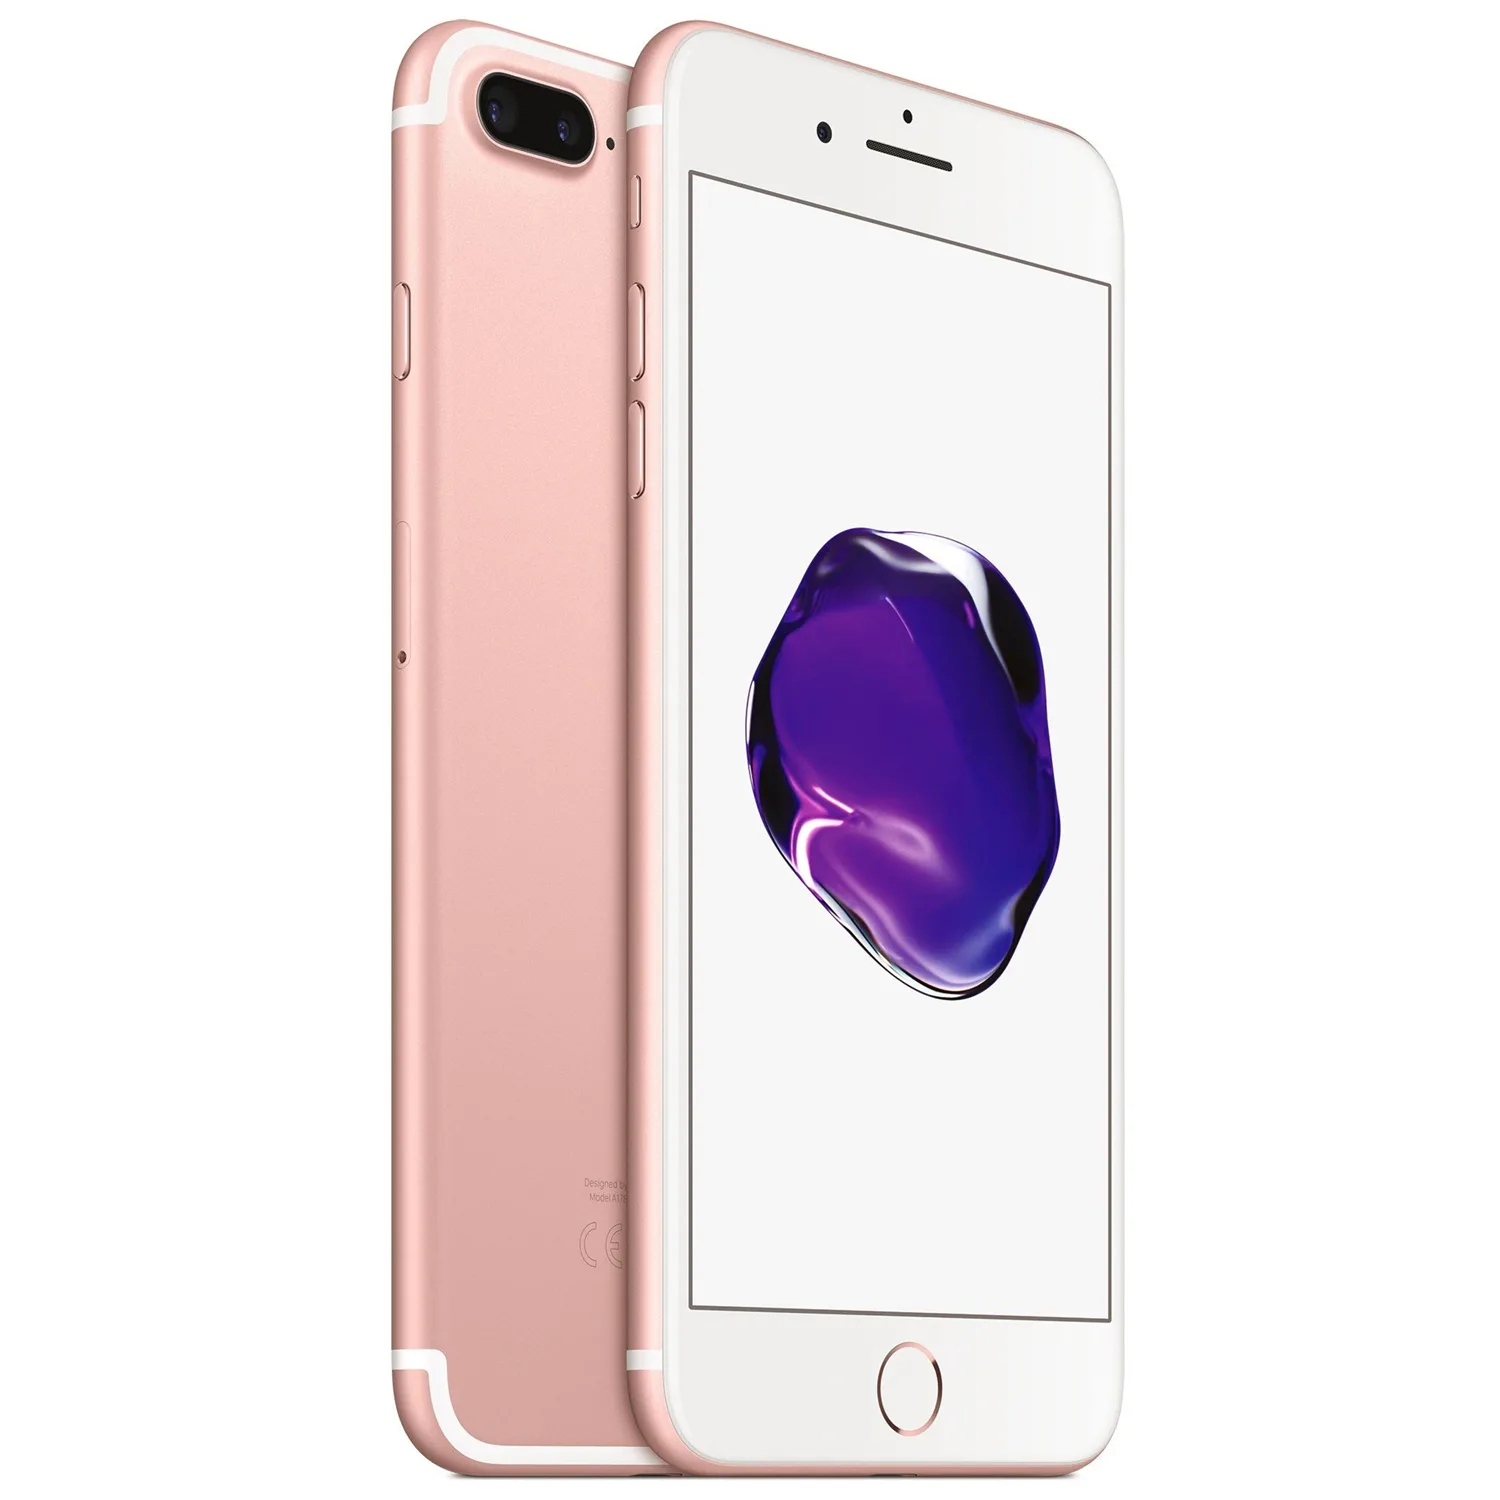 Grootste Dosering hulp iPhone 7 Plus 128GB rosegoud kopen? - 2 jaar garantie! | Fixje